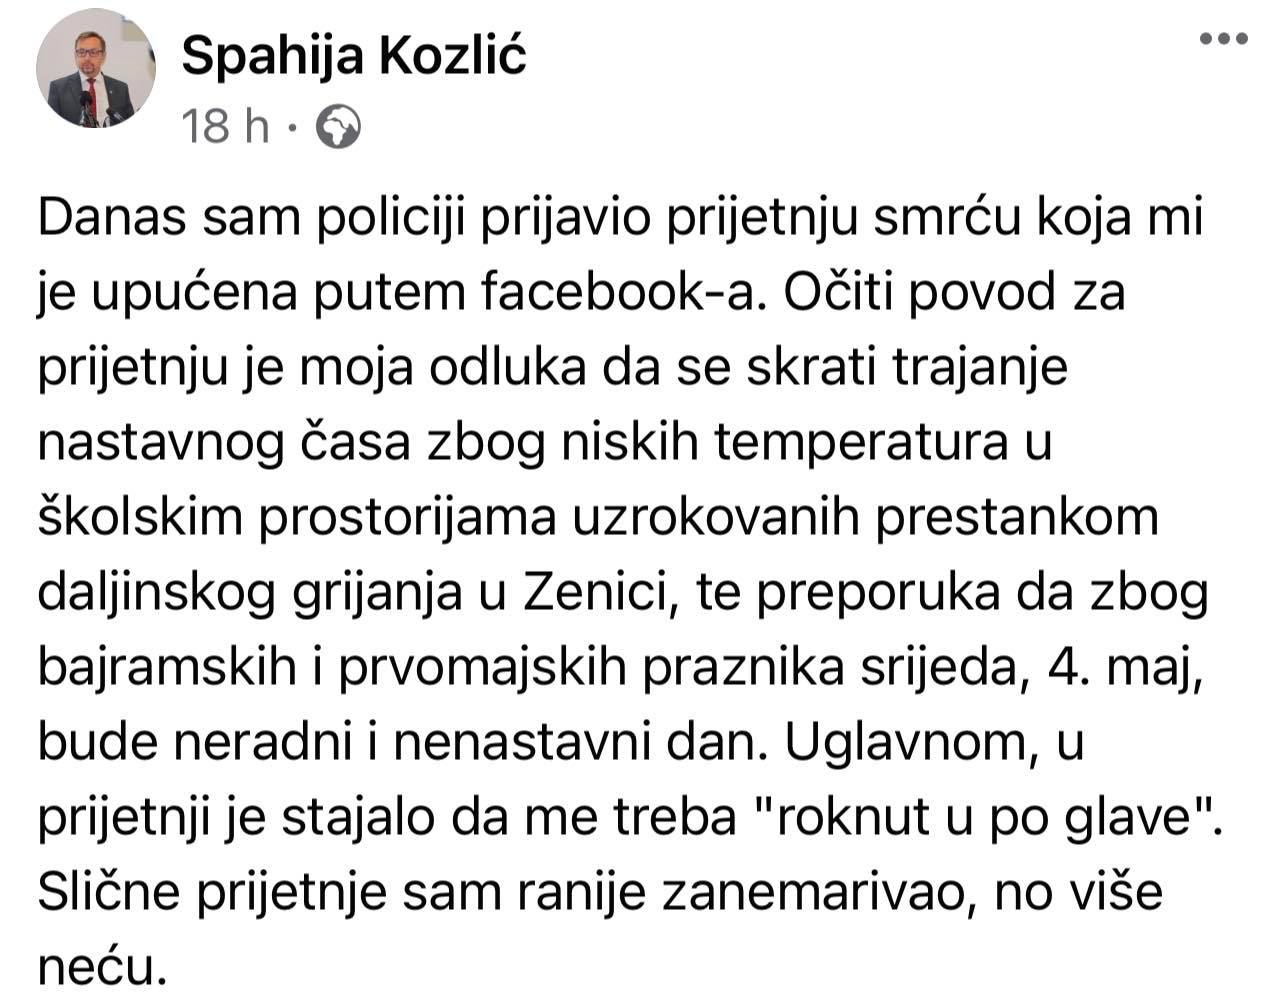 Ministar Spahija Kozlić policiji prijavio prijetnje na društvenim mrežama